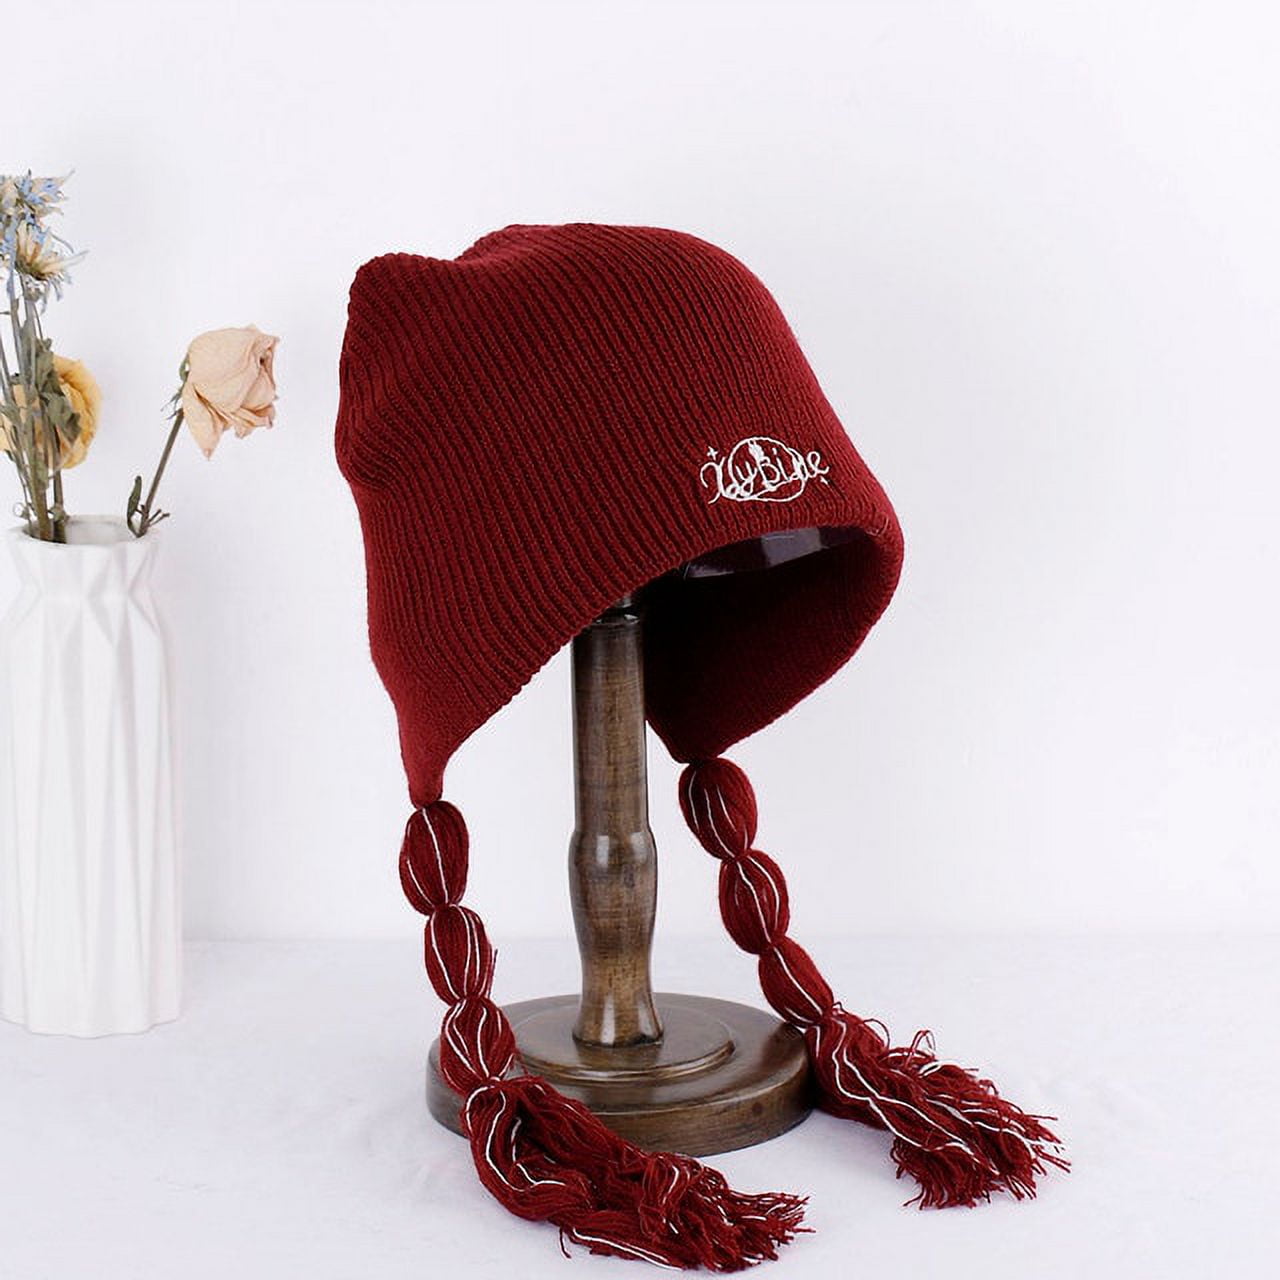 DanceeMangoo NEW women's winter hat dreadlocks Hat with ear flaps